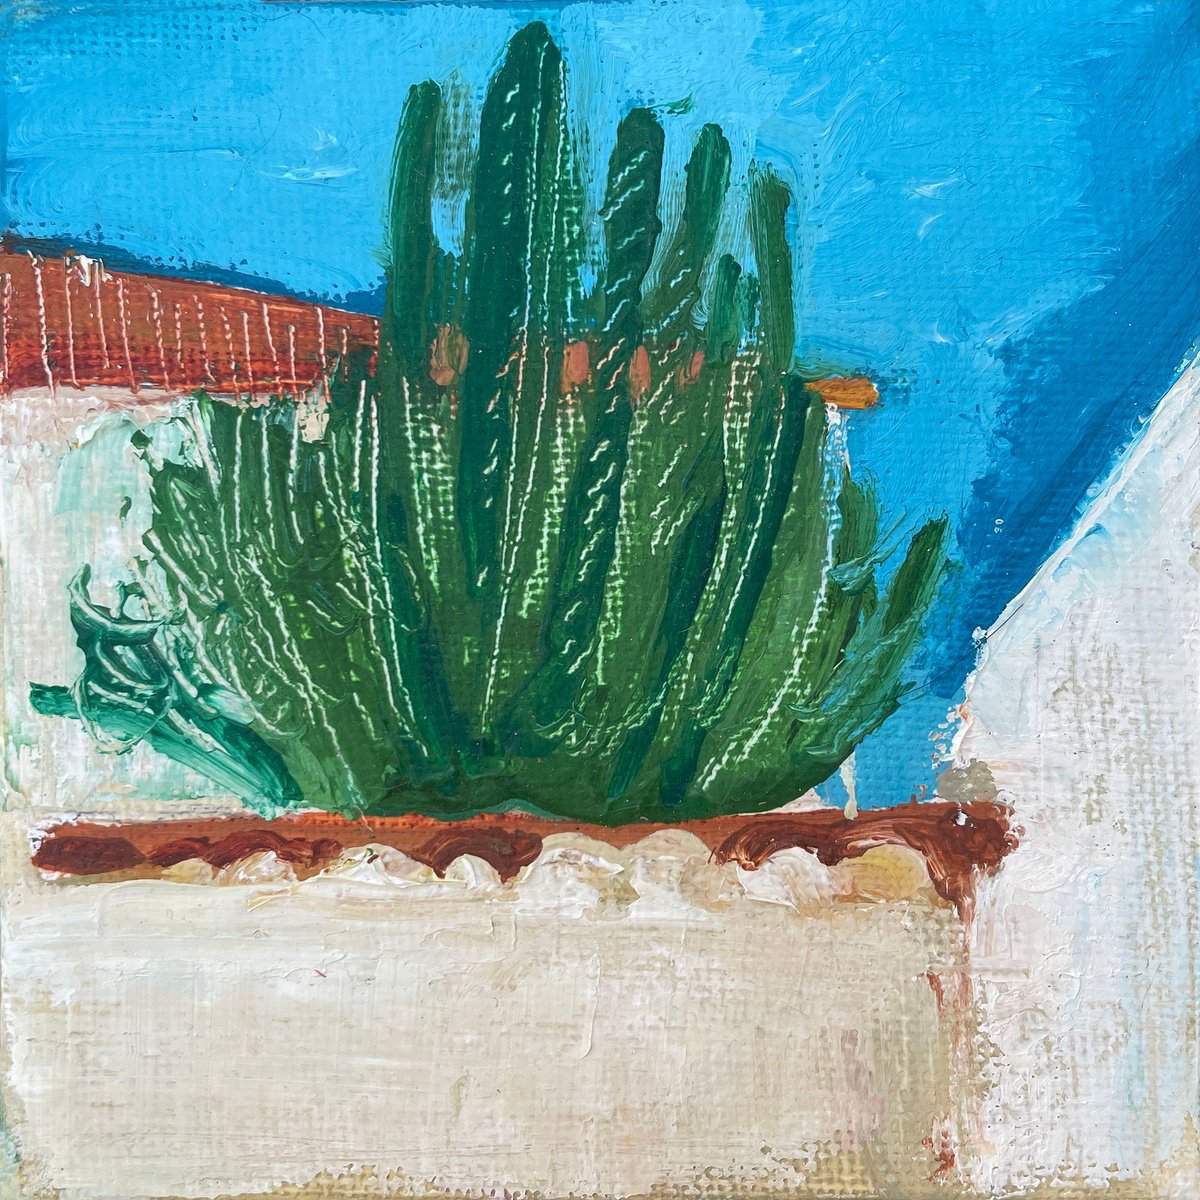 Spanish Cactus - 10x10 cm by Victoria Dael